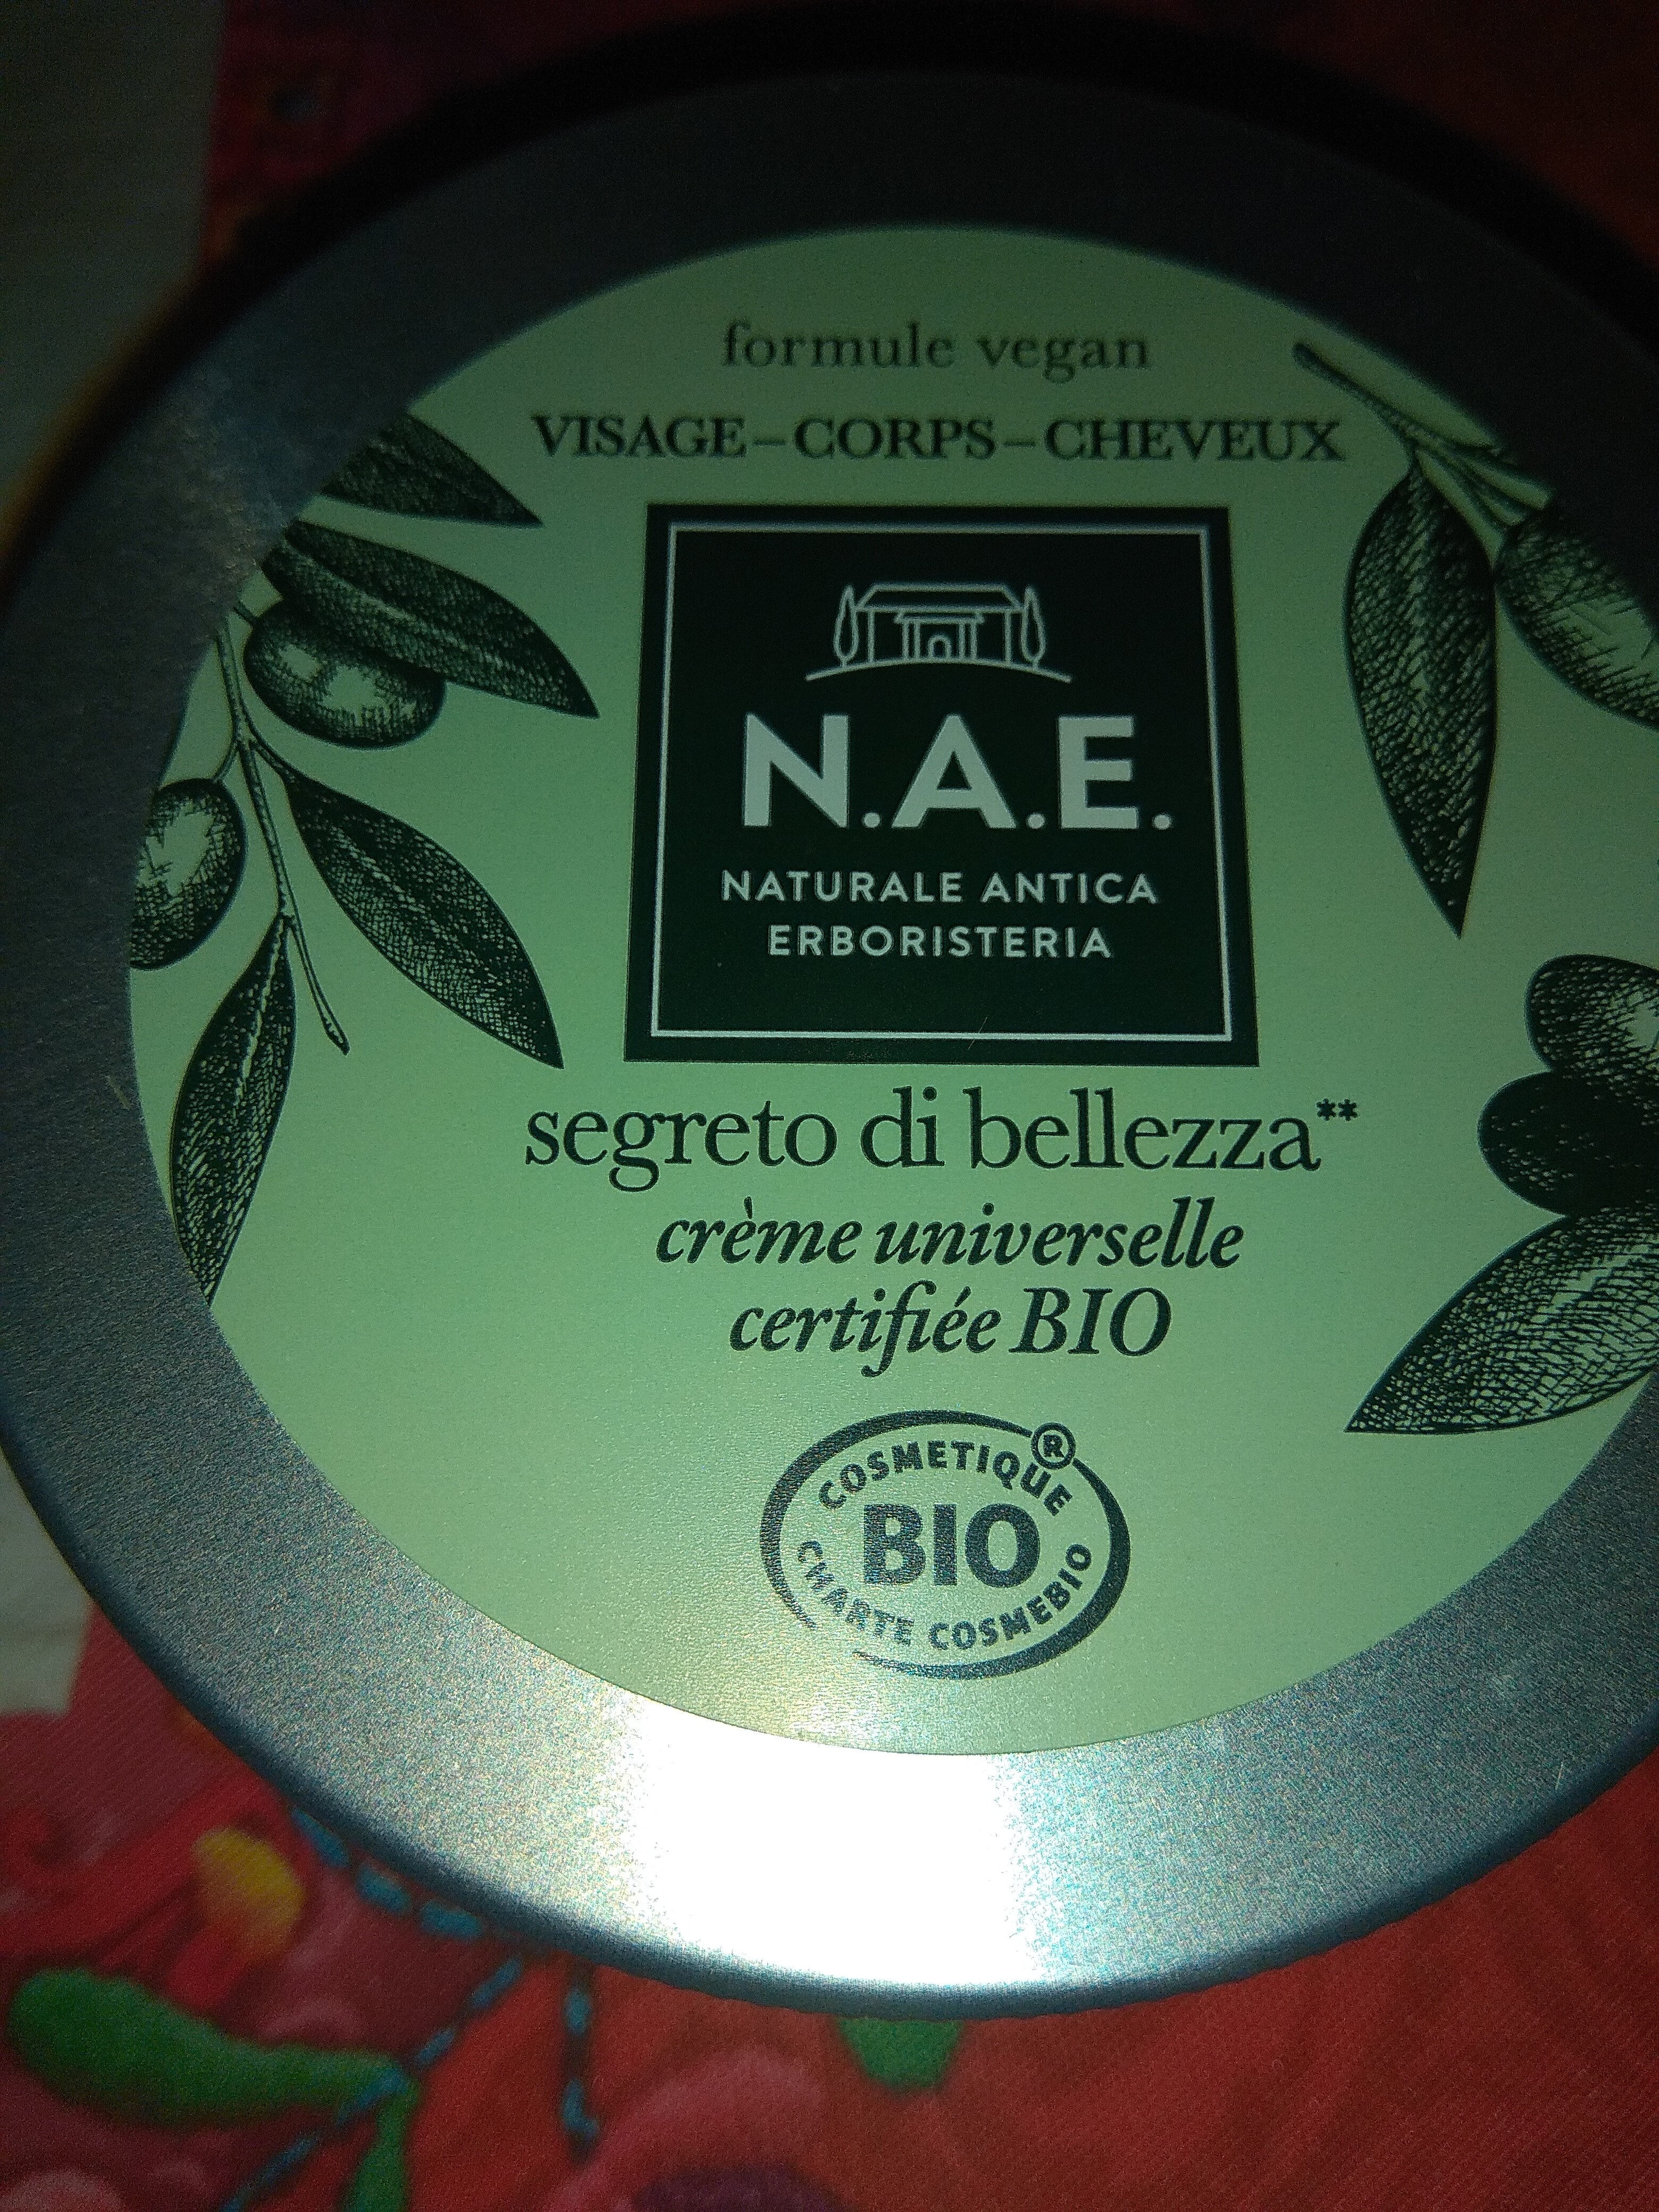 crème universelle certifiée bio - Product - fr